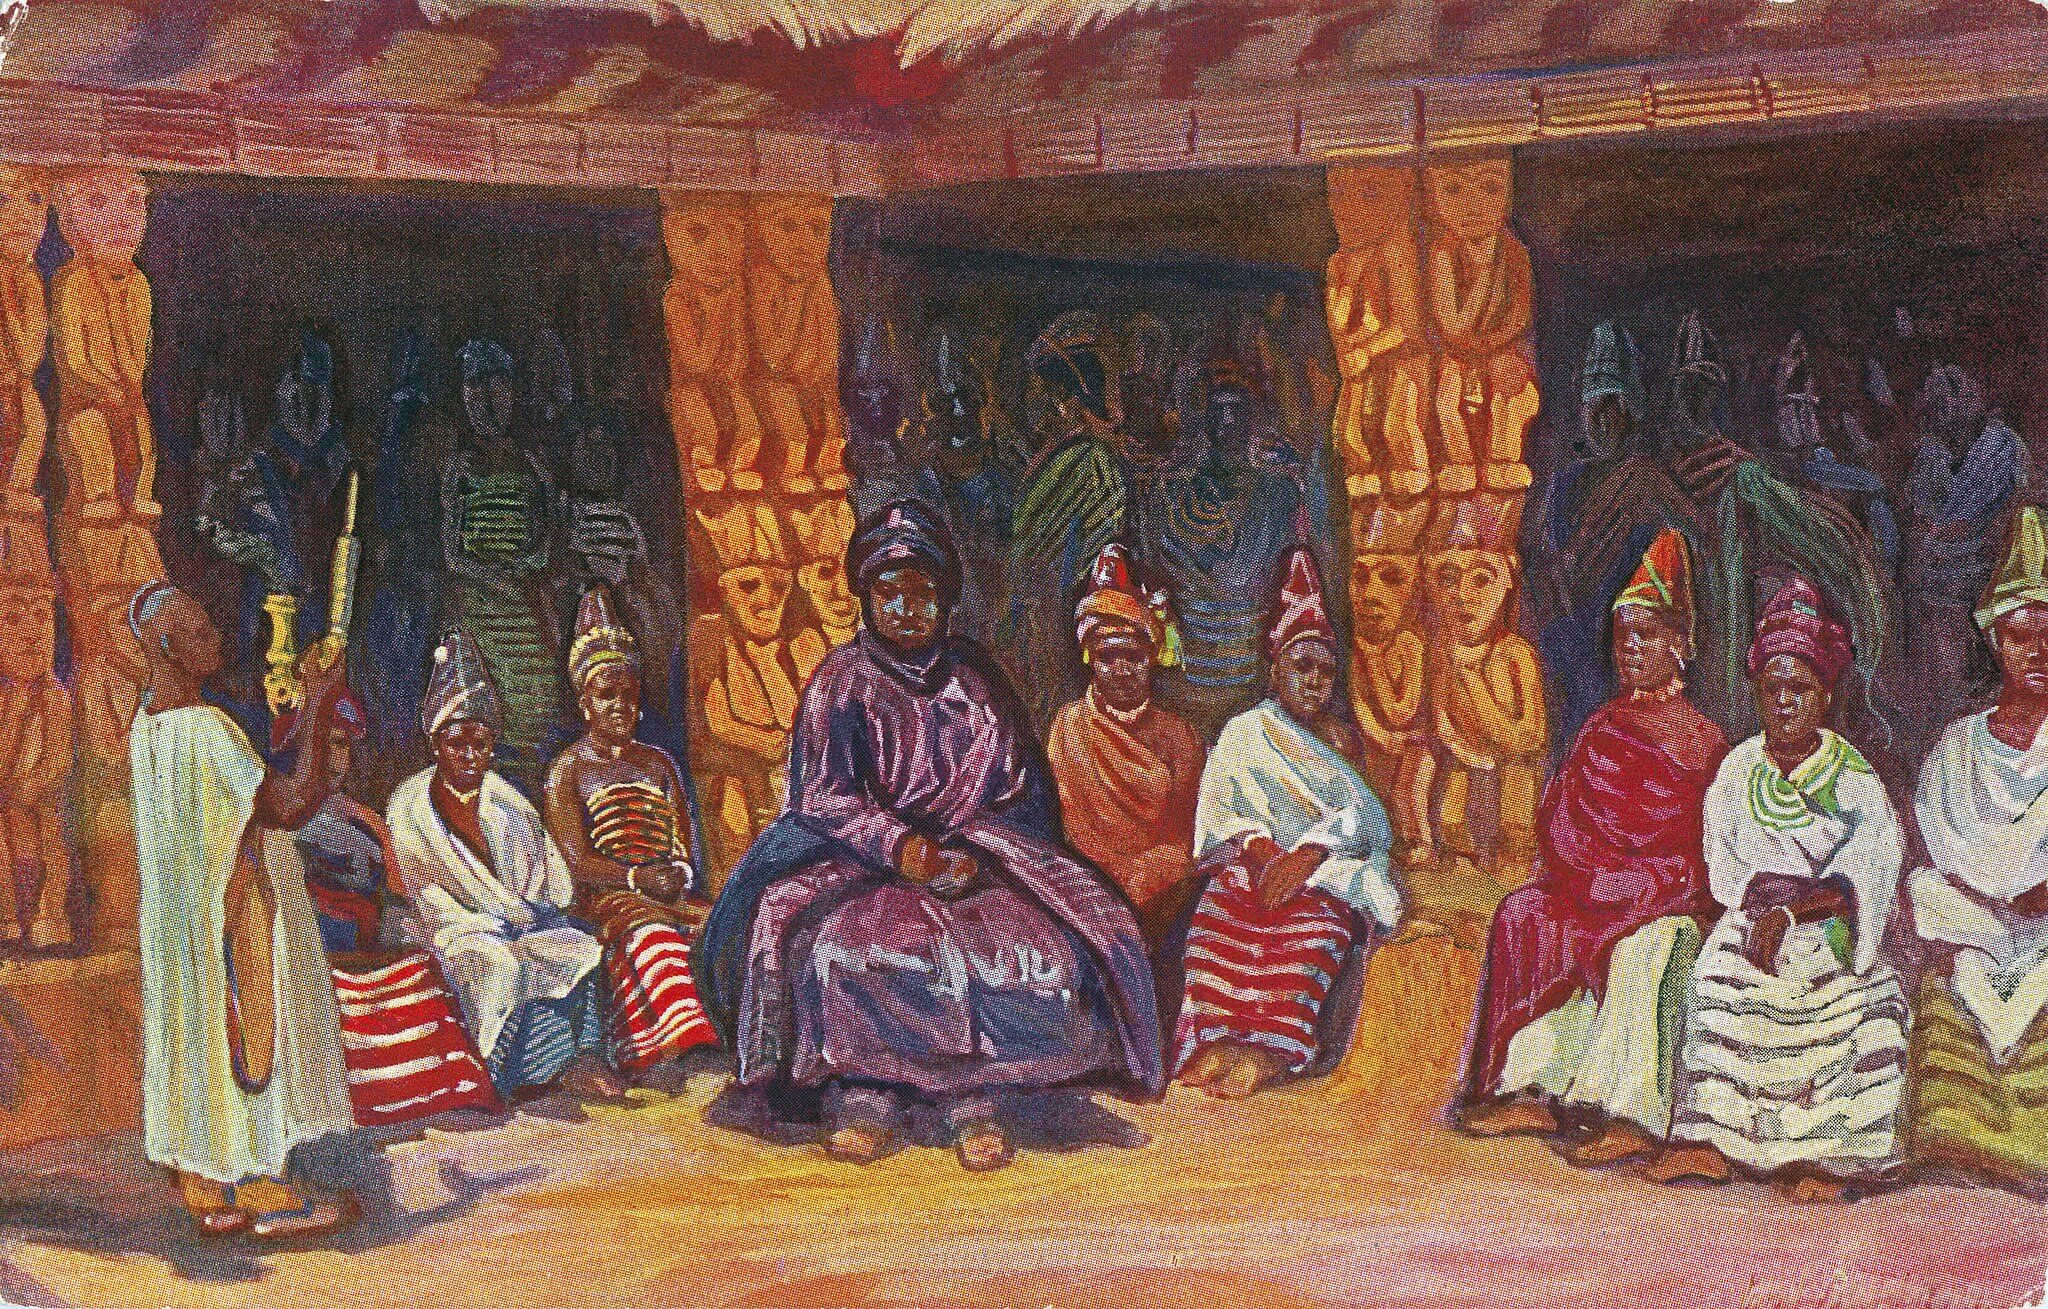 Obraz przedstawia afrykańskiego króla w purpurowych szatach, siedzącego między 8 kobietami. W tle widać ozdobne kolumny pałacowe oraz tłum kłębiący się w cieniu. Z lewej strony stoi postać trzymająca z namaszczeniem ceremonialny złoty przedmiot (fajkę?).